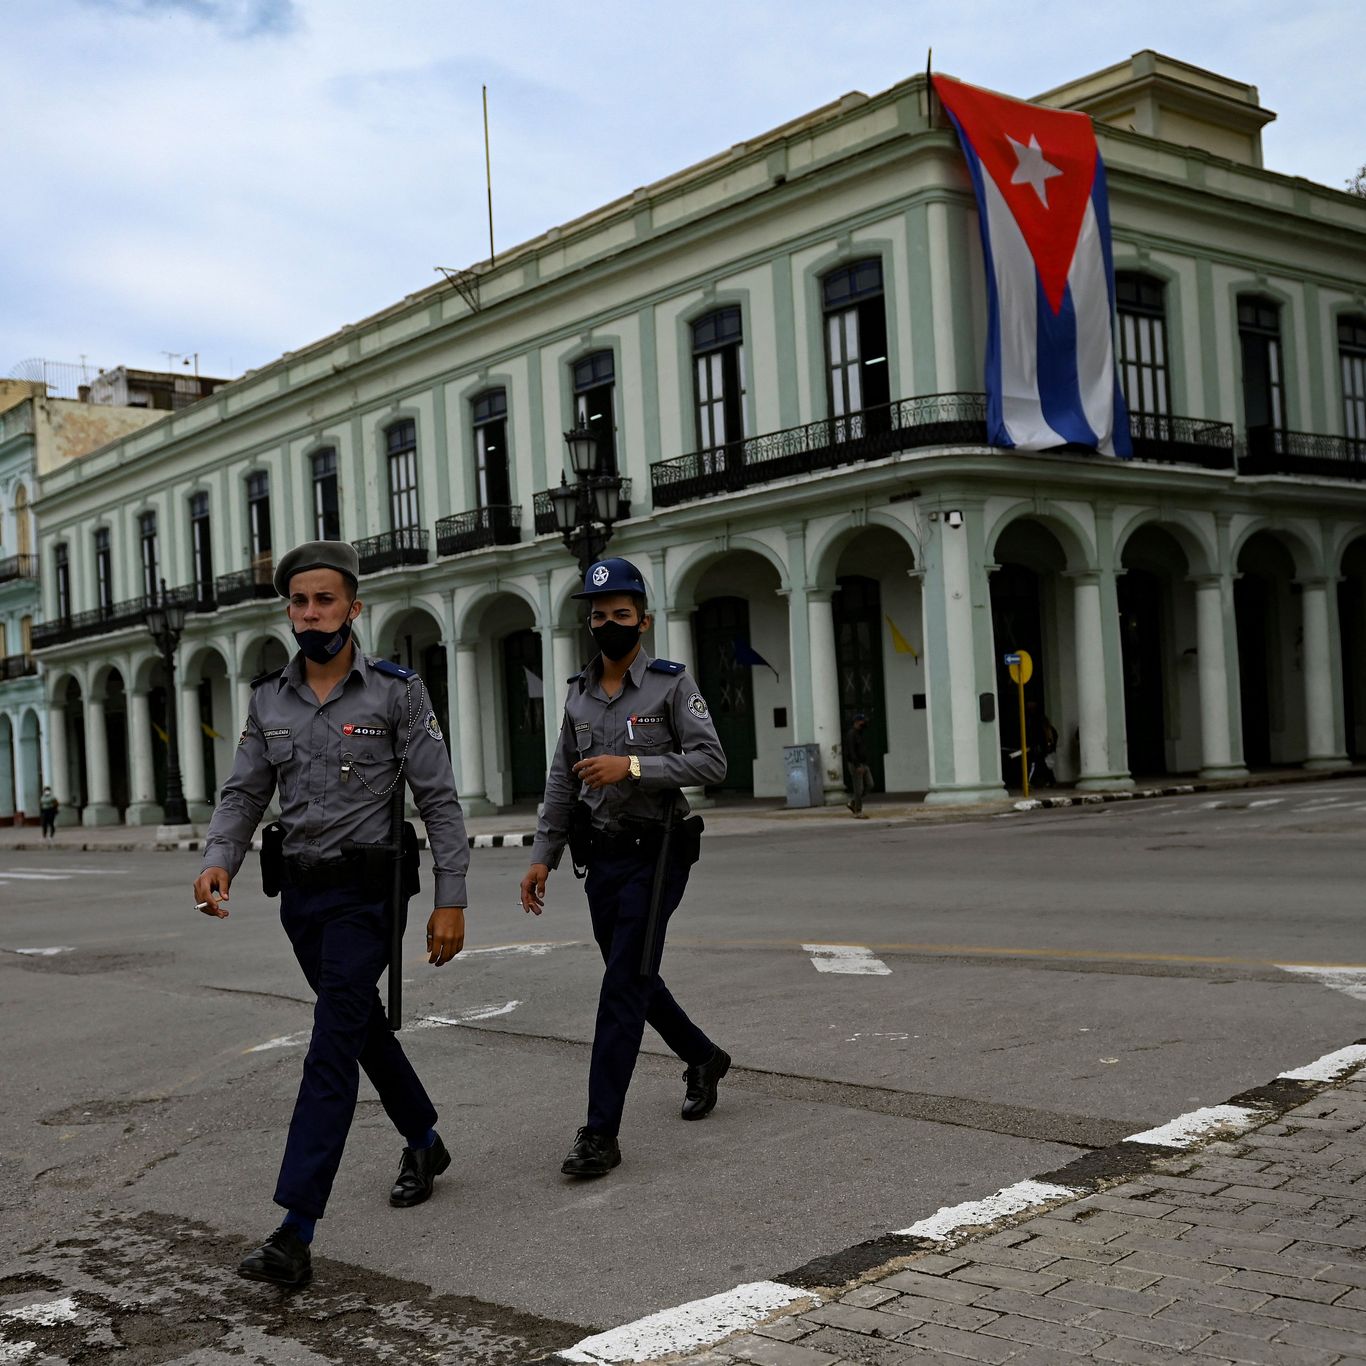 Judge, Litigators Say Demanding Change of Cuba's Communist